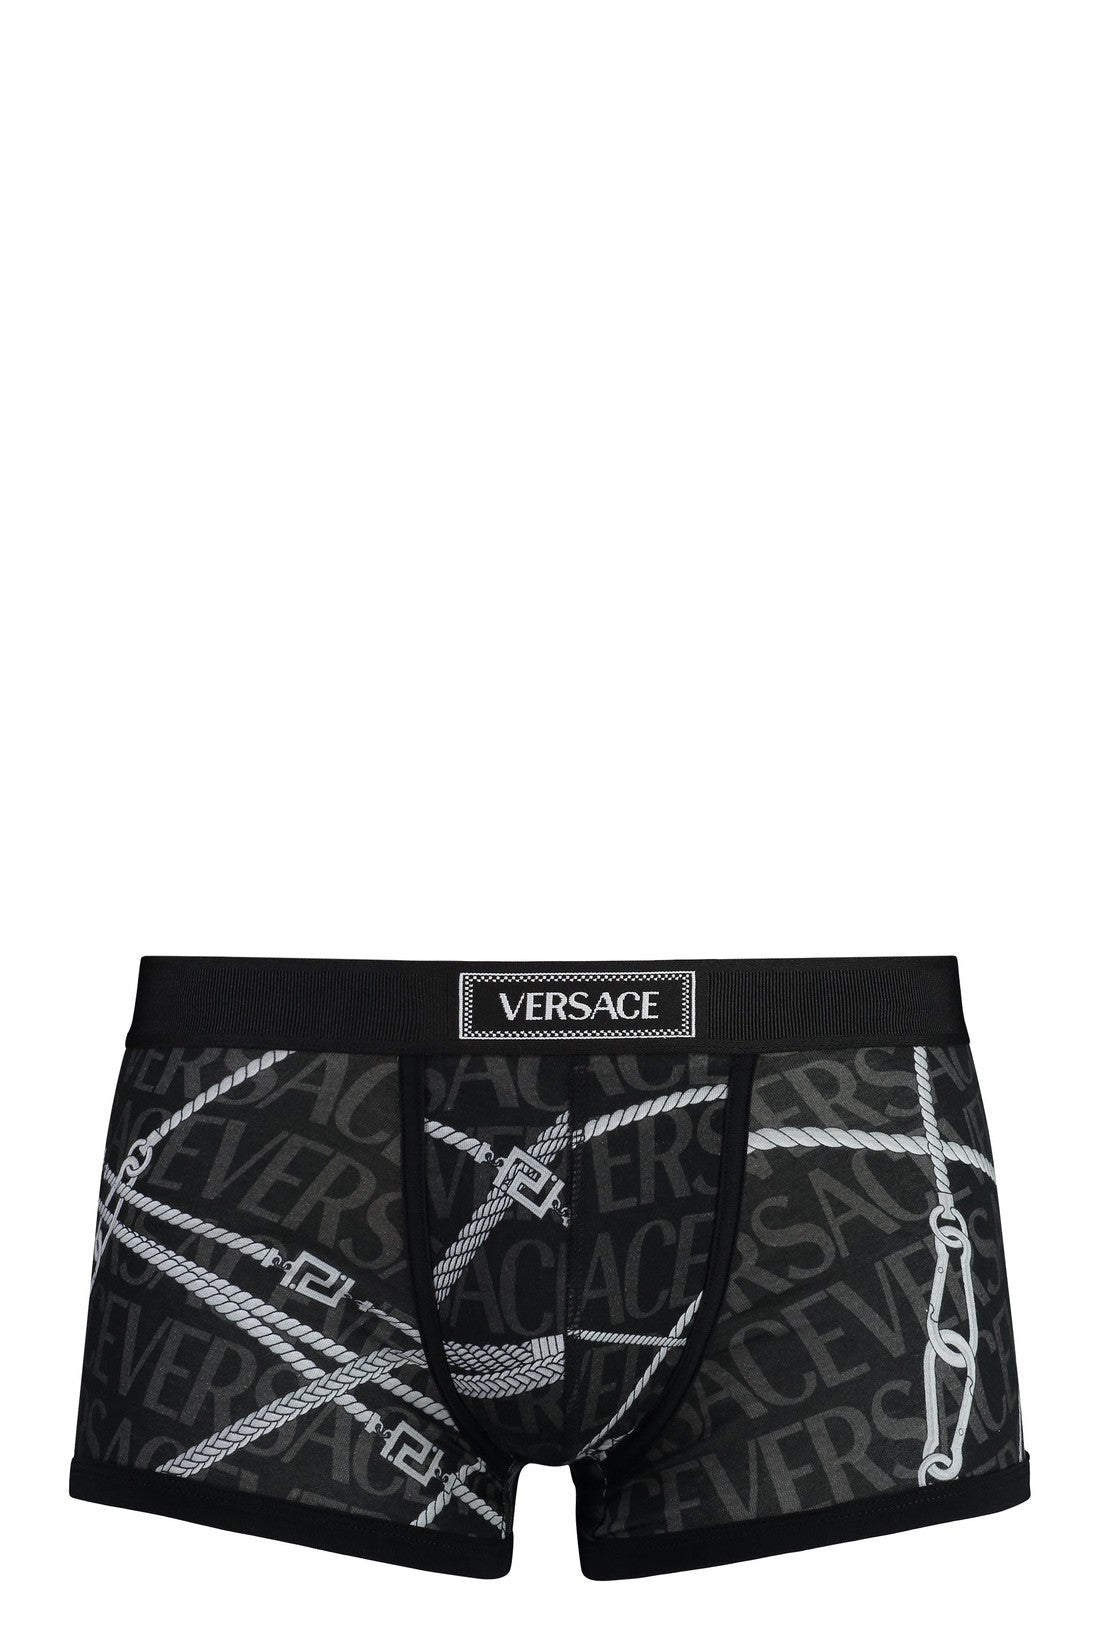 Versace-OUTLET-SALE-Cotton trunks-ARCHIVIST